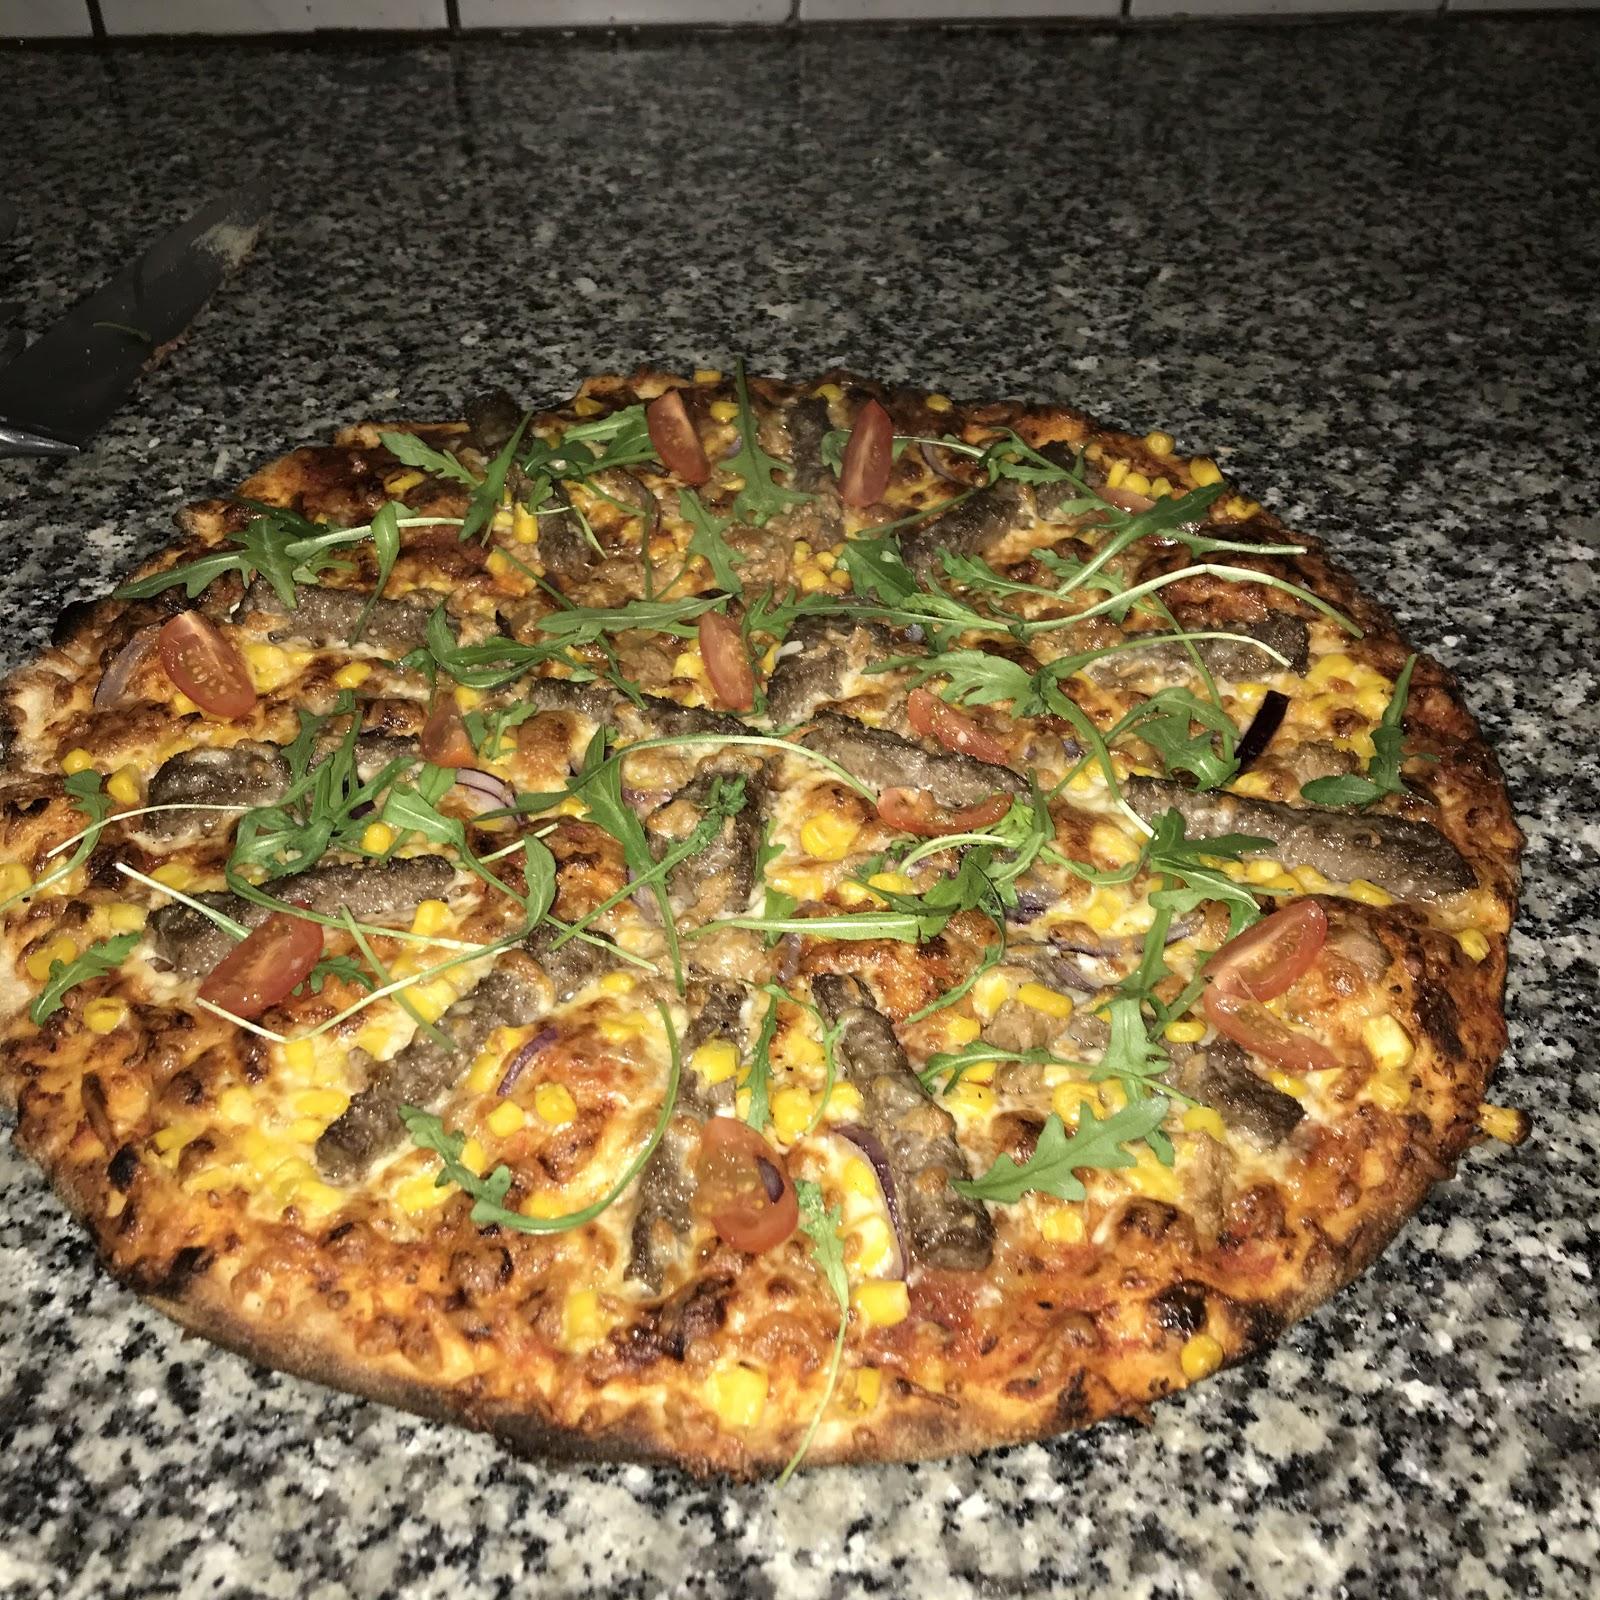 Restaurant "Karachi pizza" in Mönchengladbach